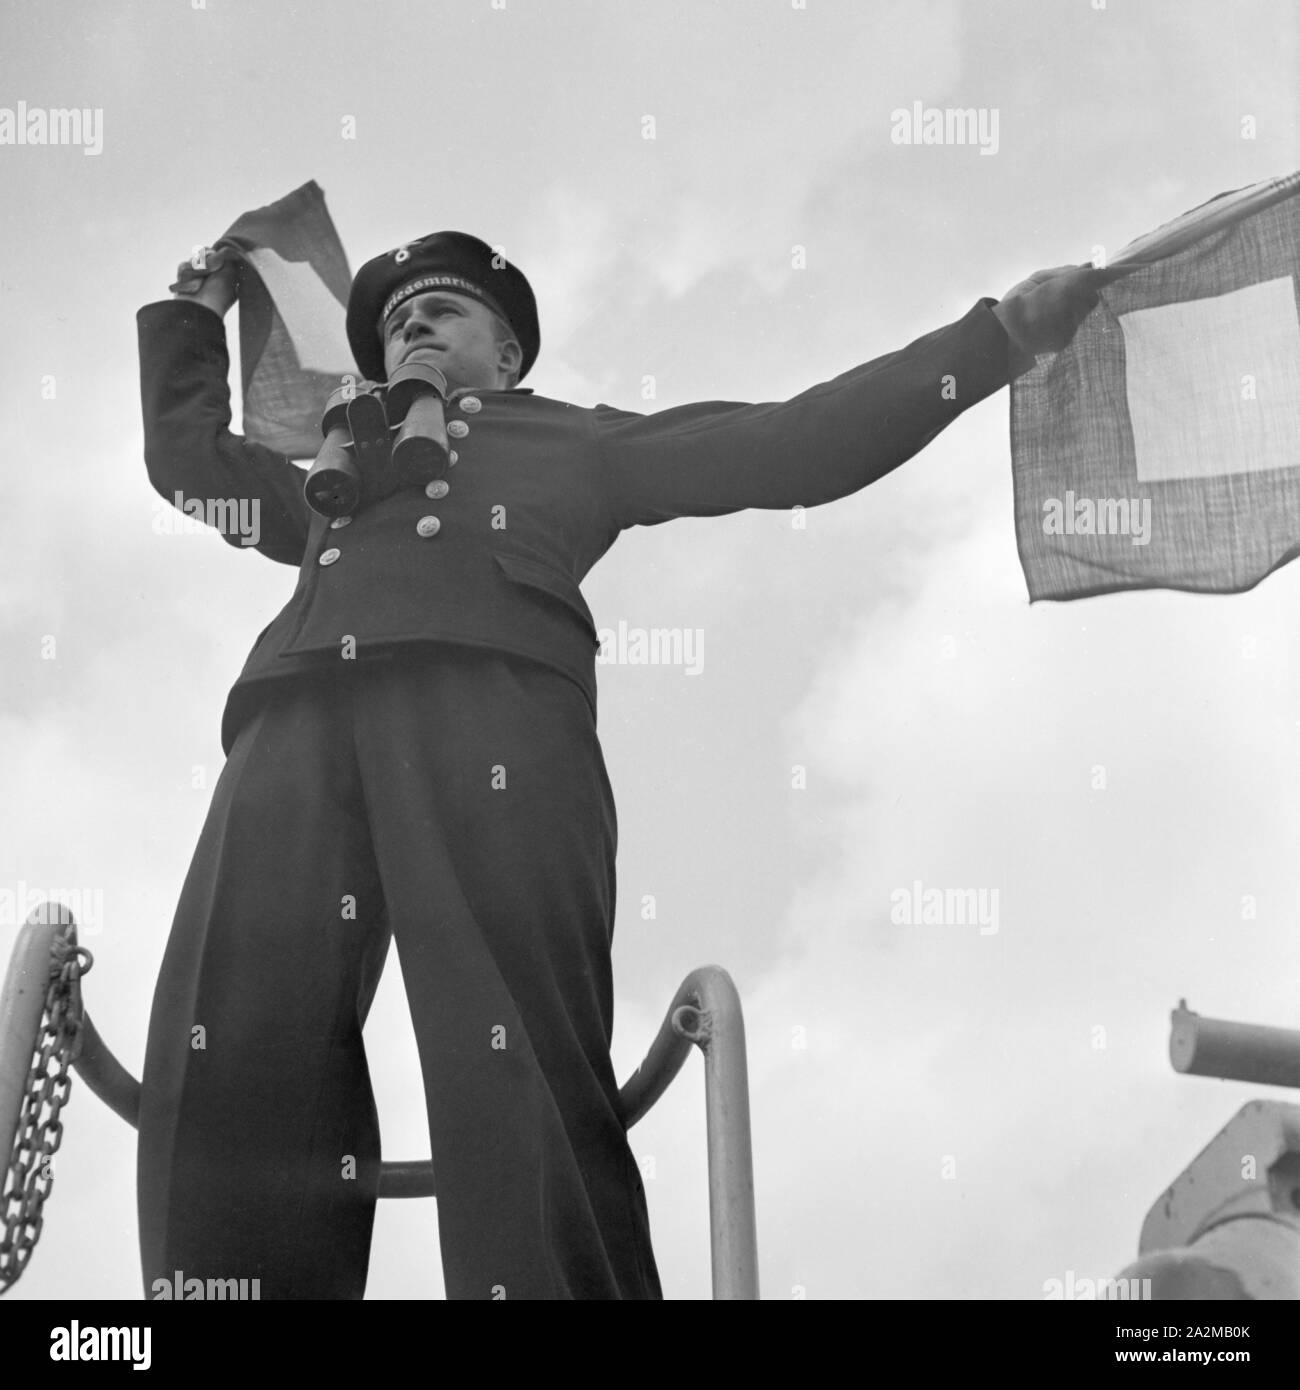 Original-Bildunterschrift: Dienst des Matrosen: Signalwinken an Bord eines Torpedoboots, Deutschland 1940er Jahre. Flag semaphore on deck of a torpedo boat, Germany 1940s. Stock Photo